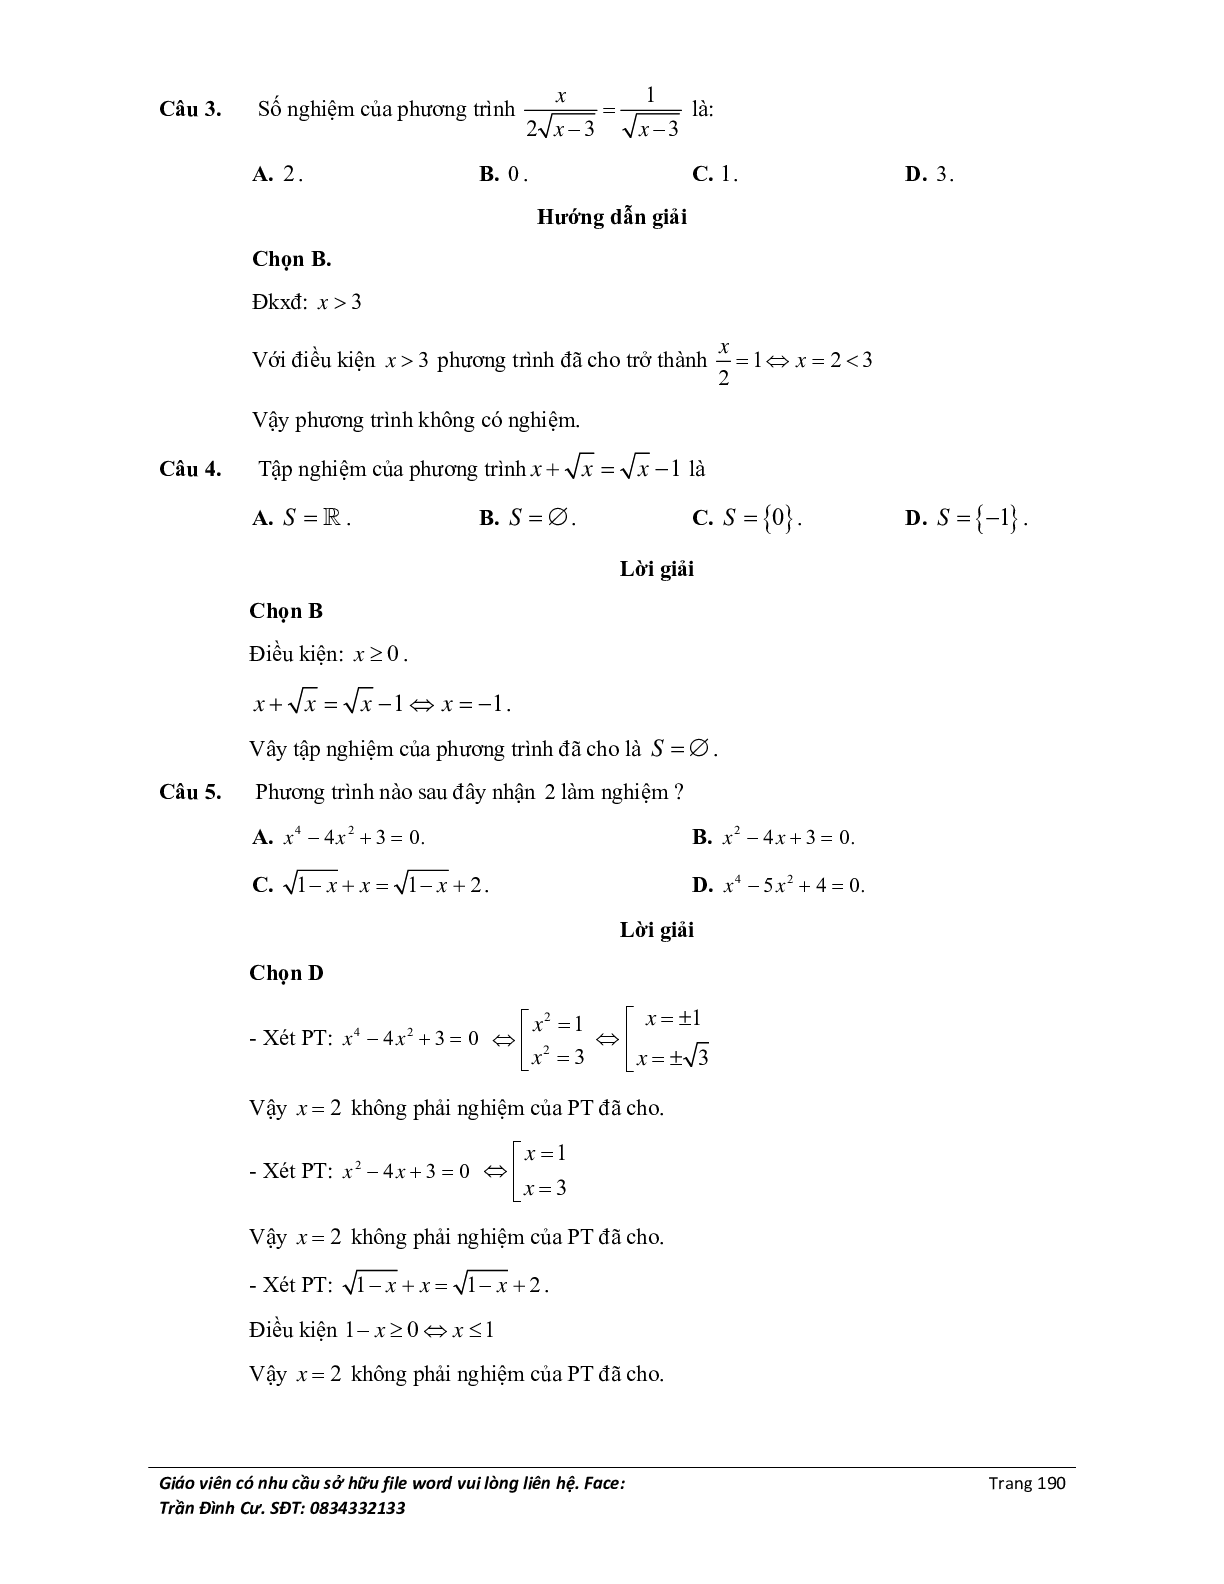 Đại cương về phương trình môn Toán lớp 10 (trang 8)